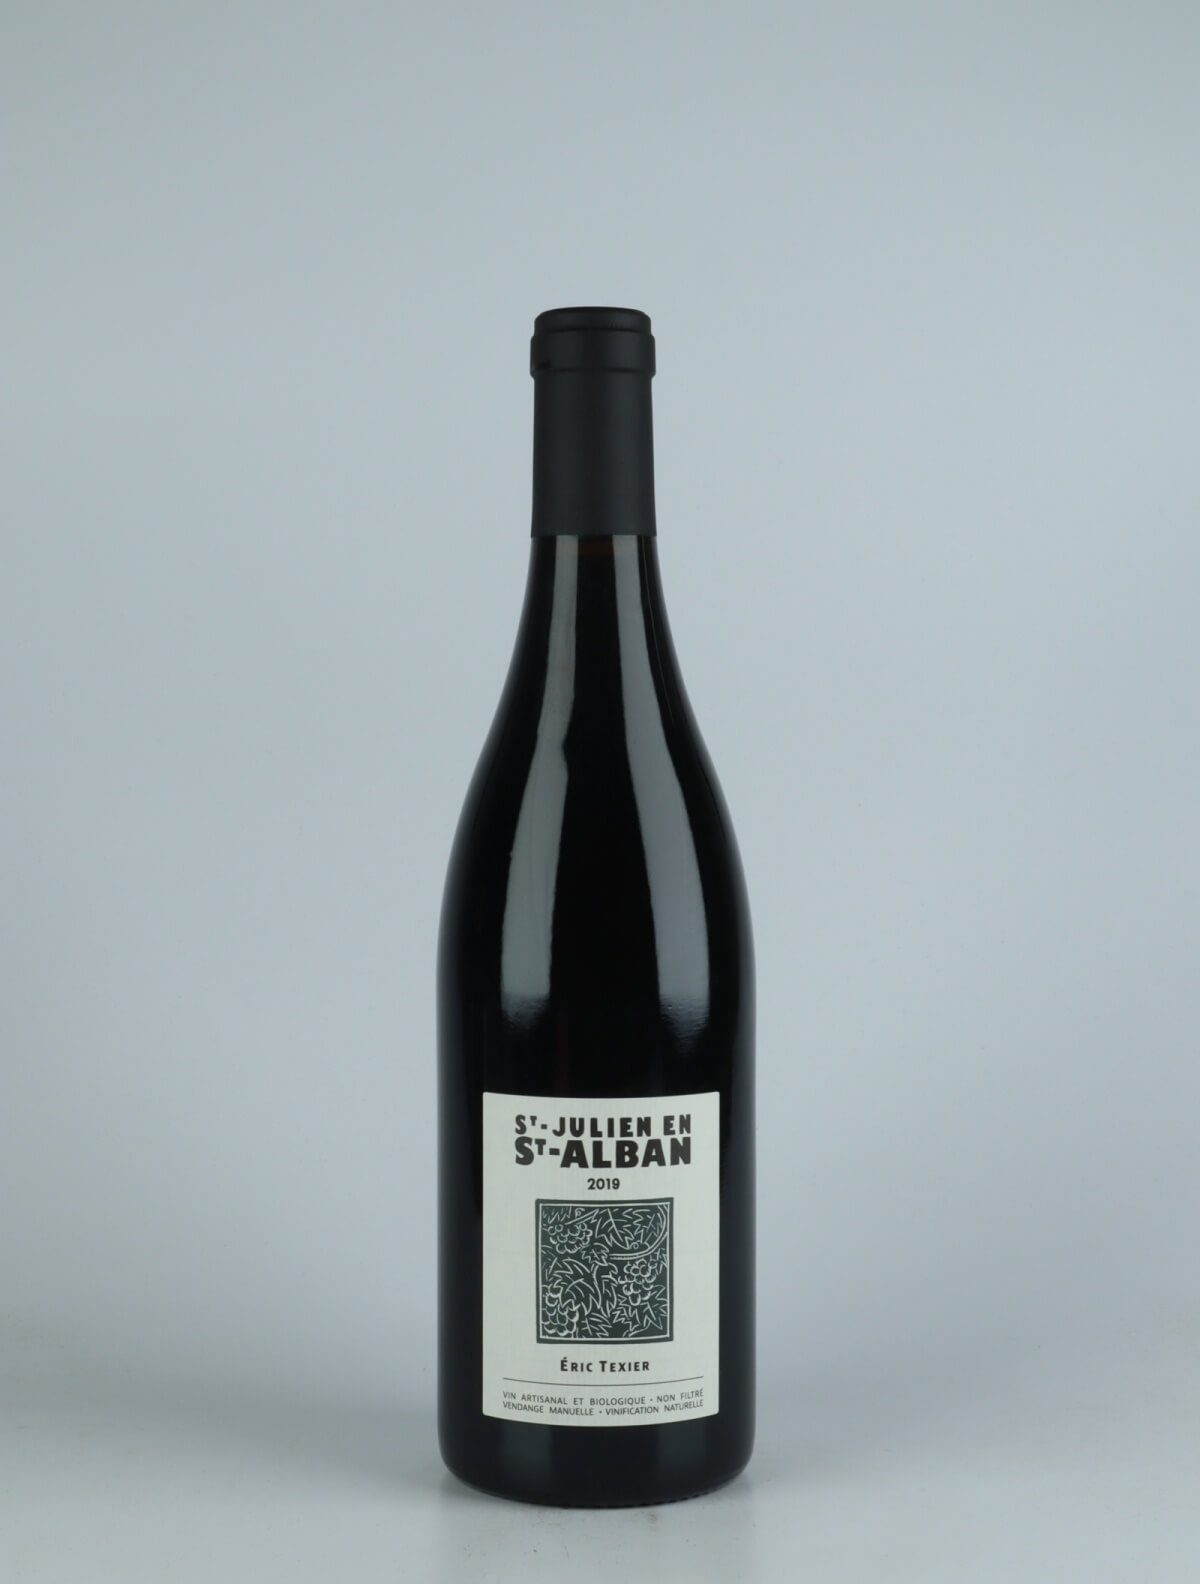 A bottle 2019 St Julien en St Alban Red wine from Eric Texier, Rhône in France